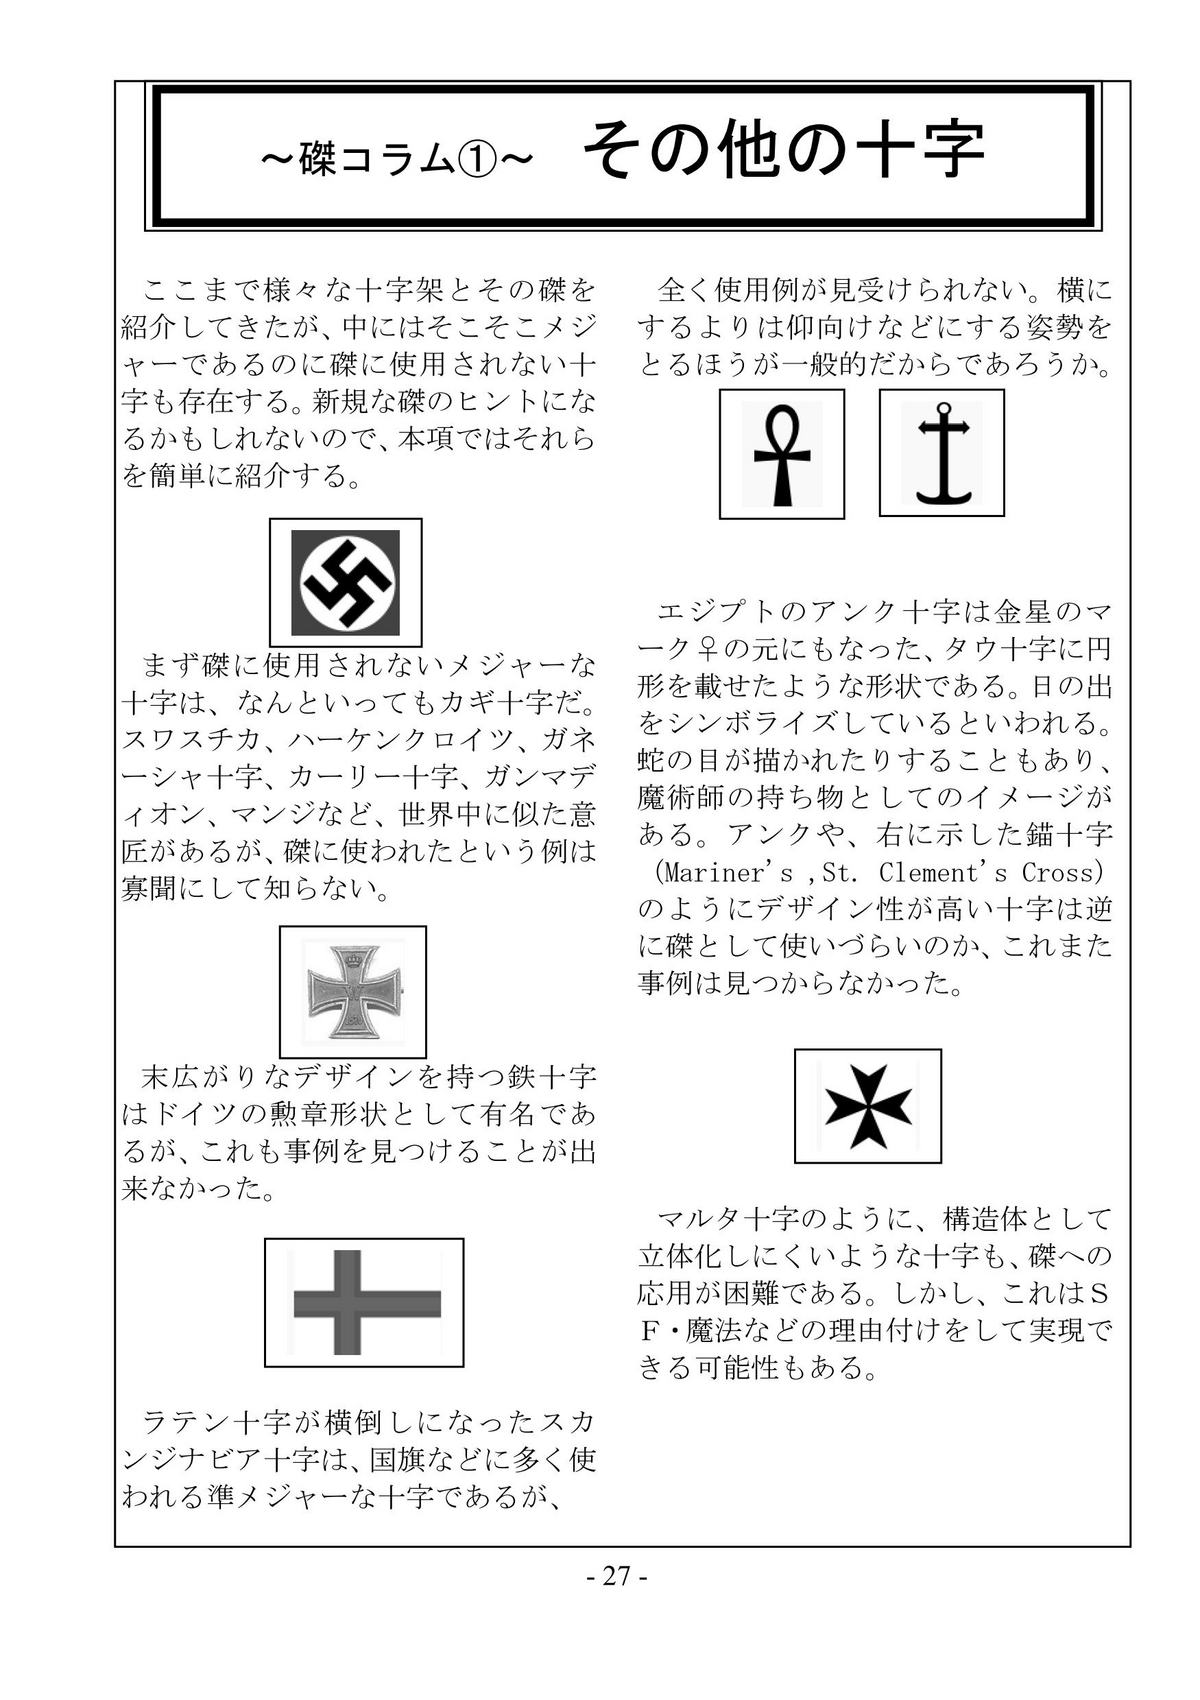 [さんかく同盟] encyclopedia of crucifixion